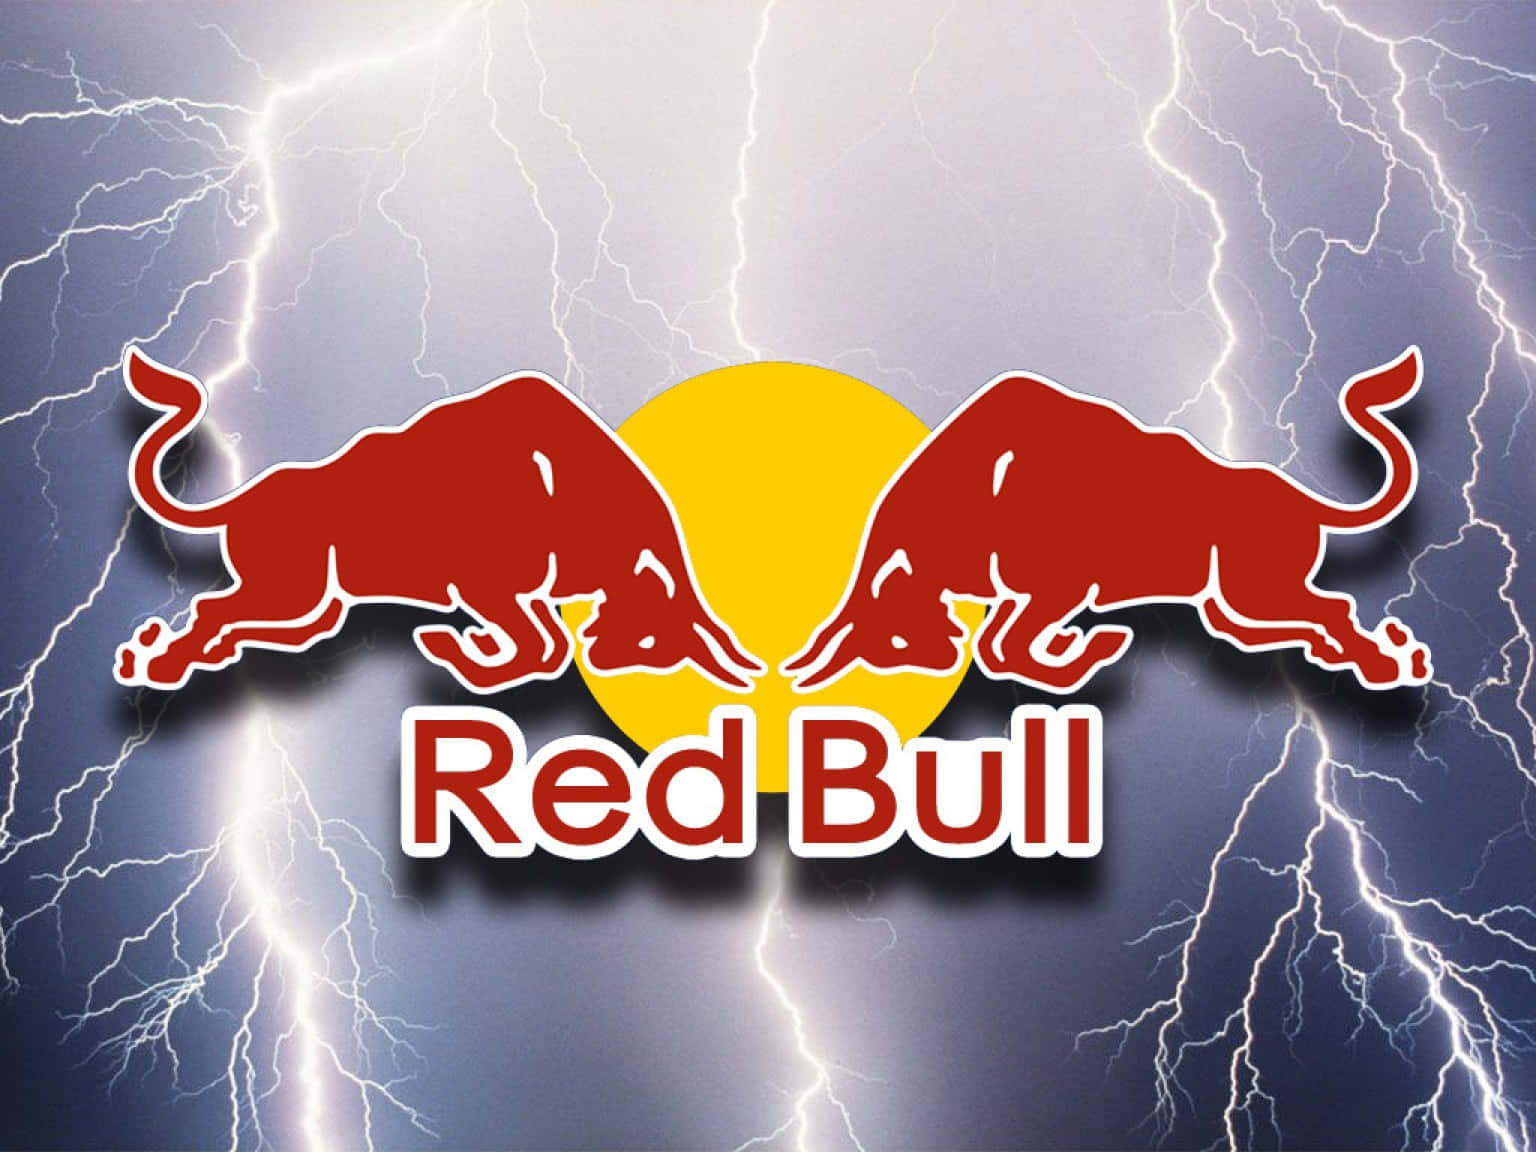 An intense burst of energy - Red Bull!